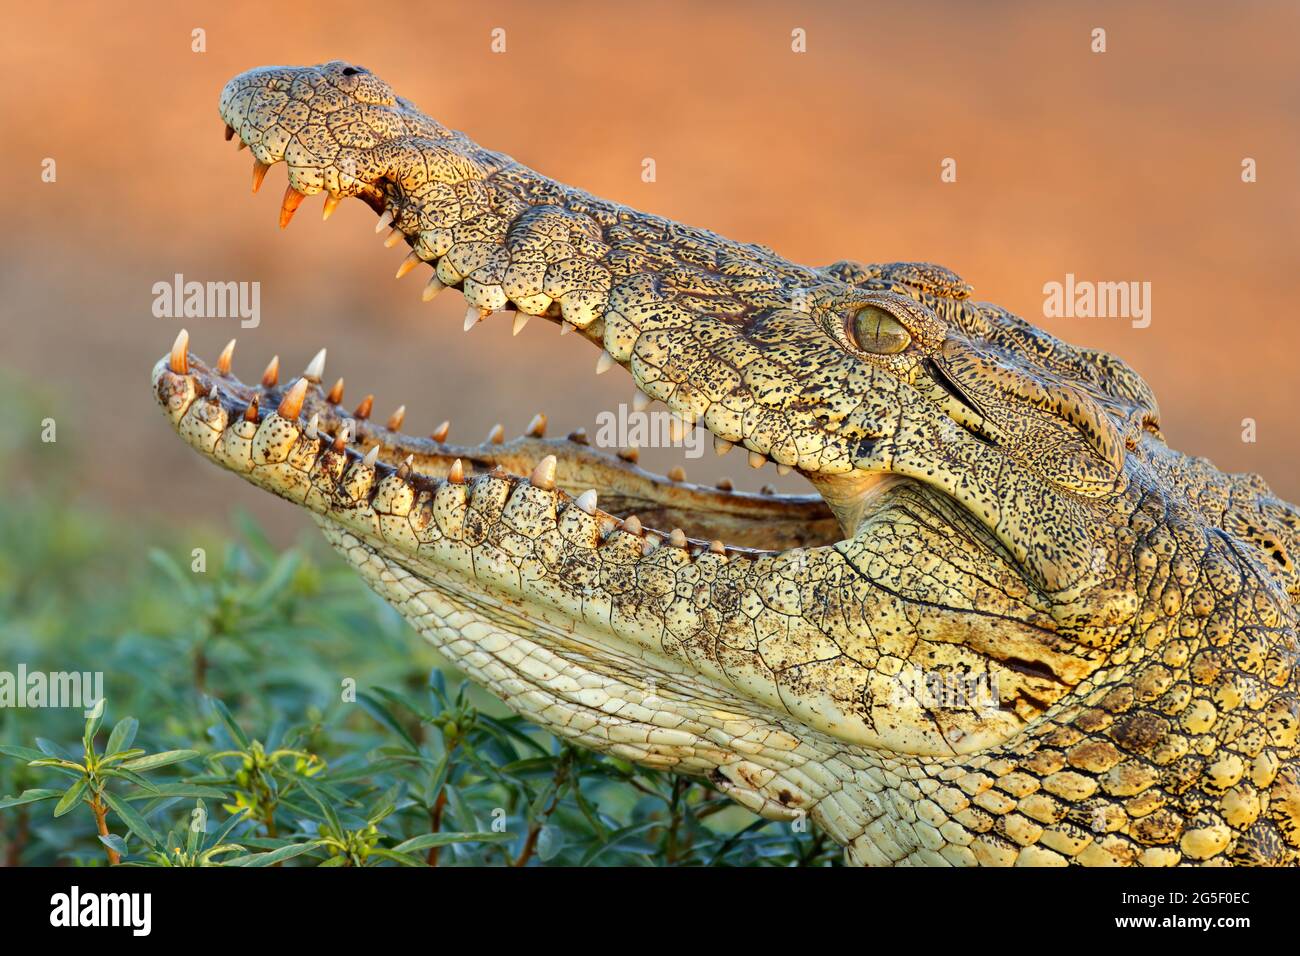 Retrato de un cocodrilo grande del Nilo (Crocodylus niloticus) con mandíbulas abiertas, Parque Nacional Kruger, Sudáfrica Foto de stock